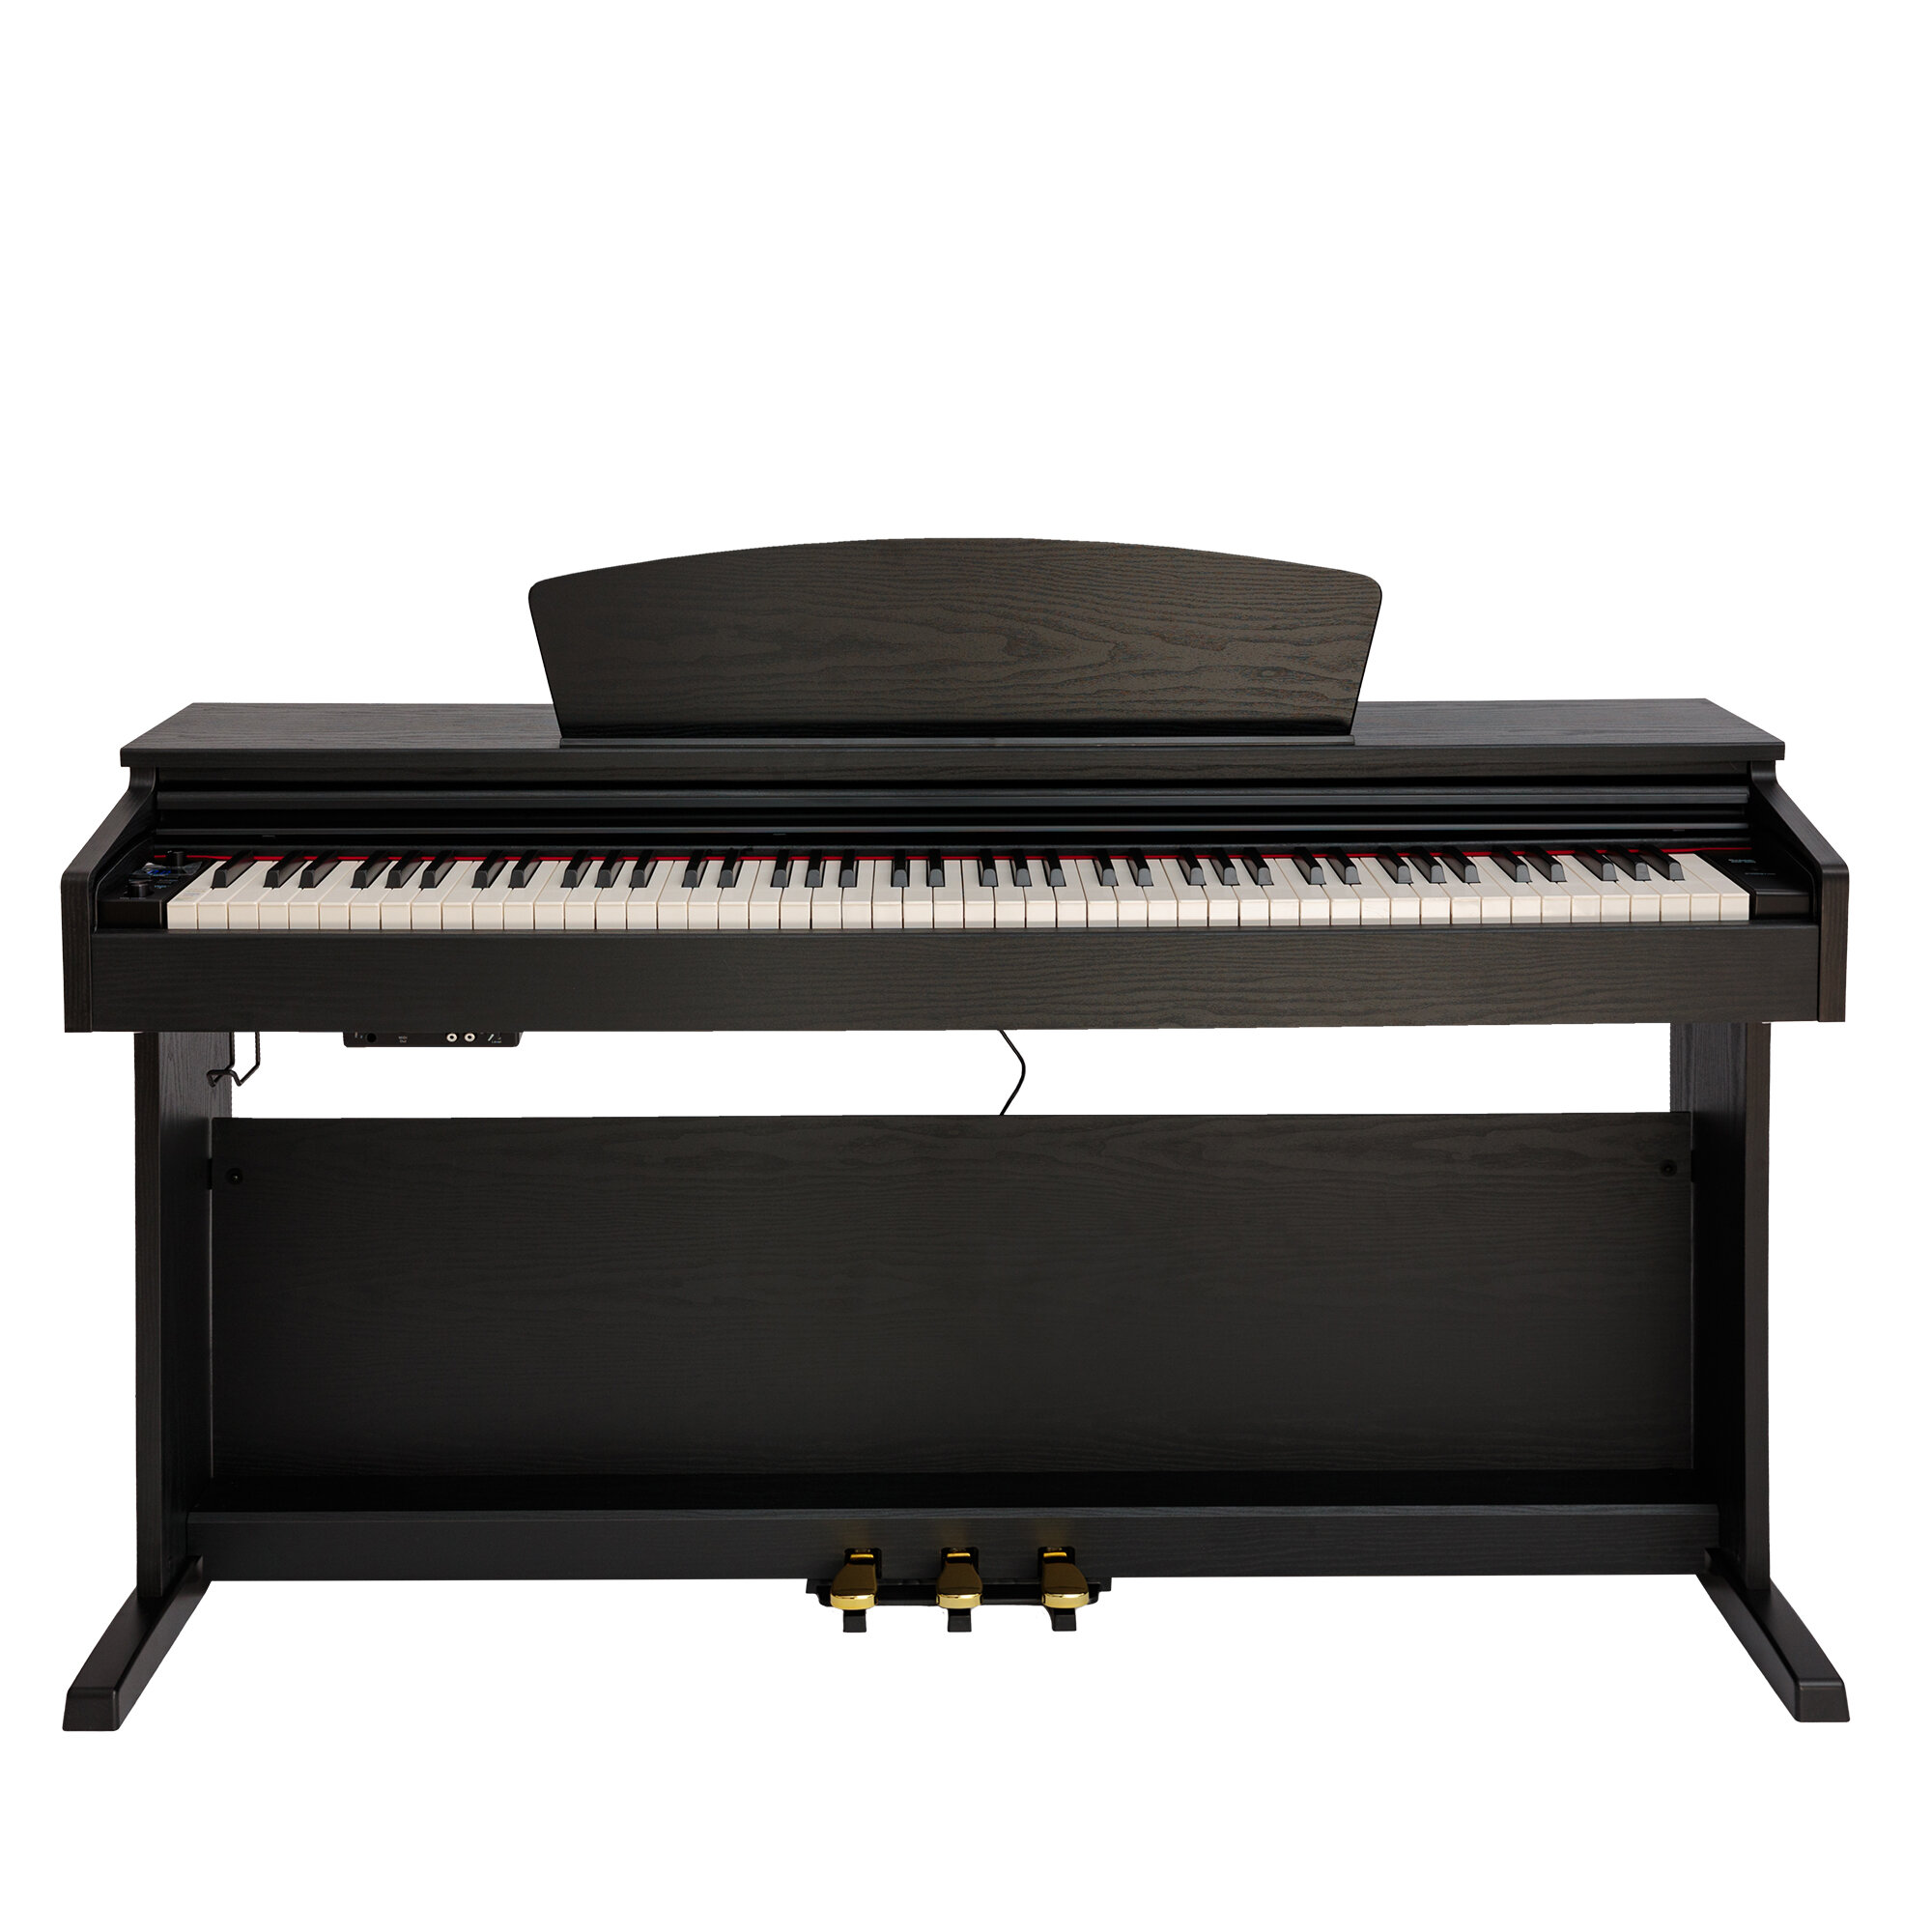 Rockdale Etude 128 Graded Black цифровое пианино 88 клавиш цвет черный